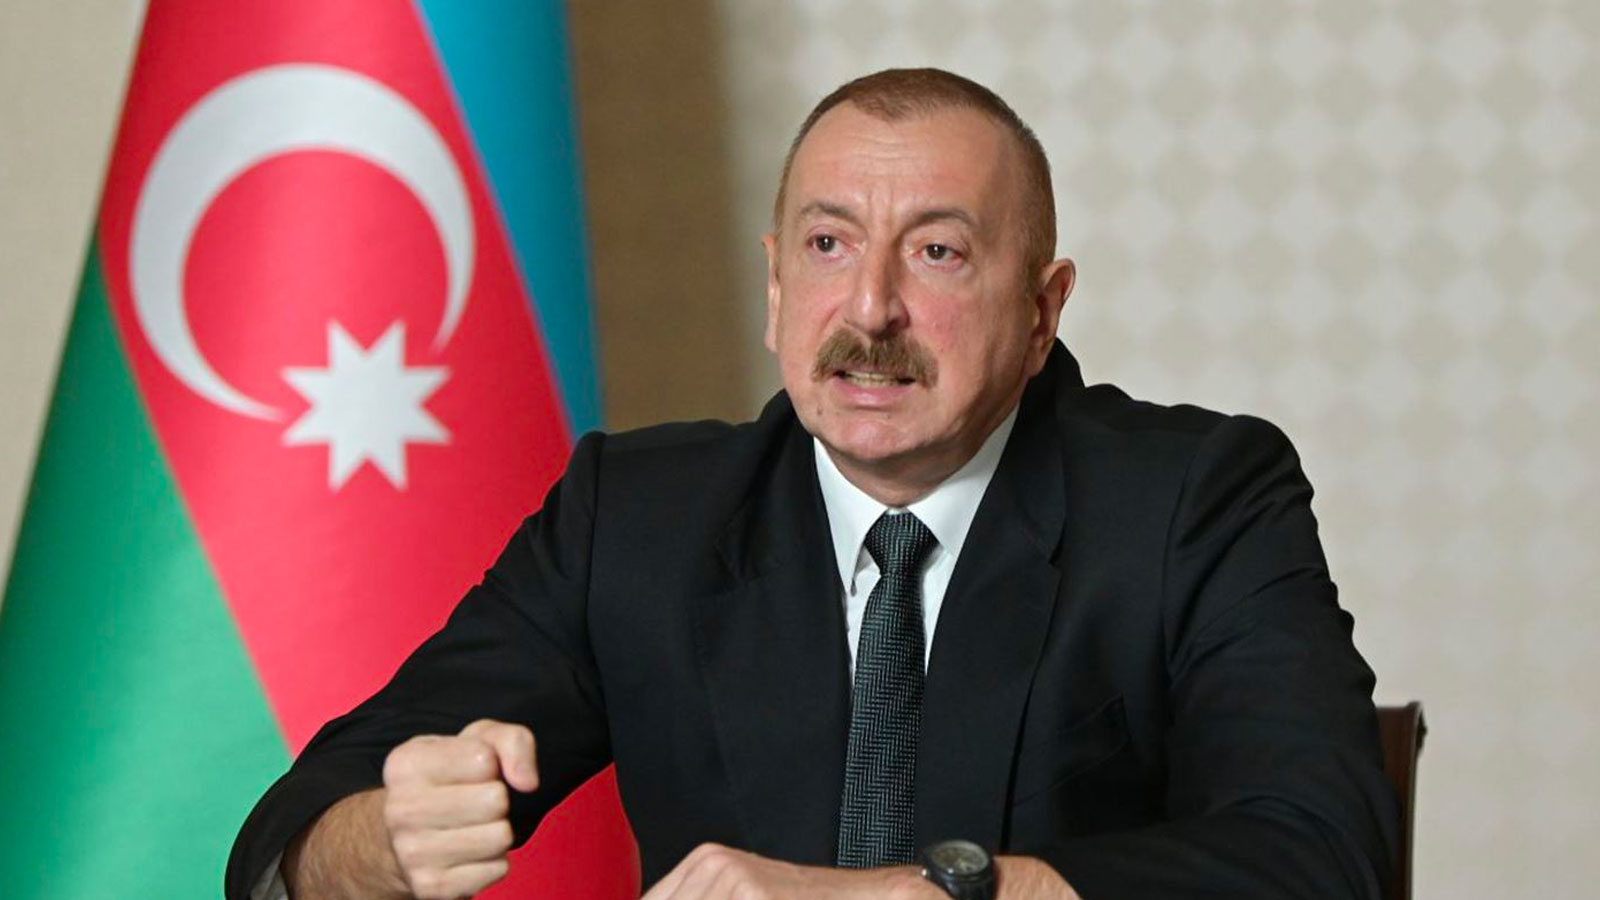 Aliyev den rest: Artık vaktimiz kalmadı